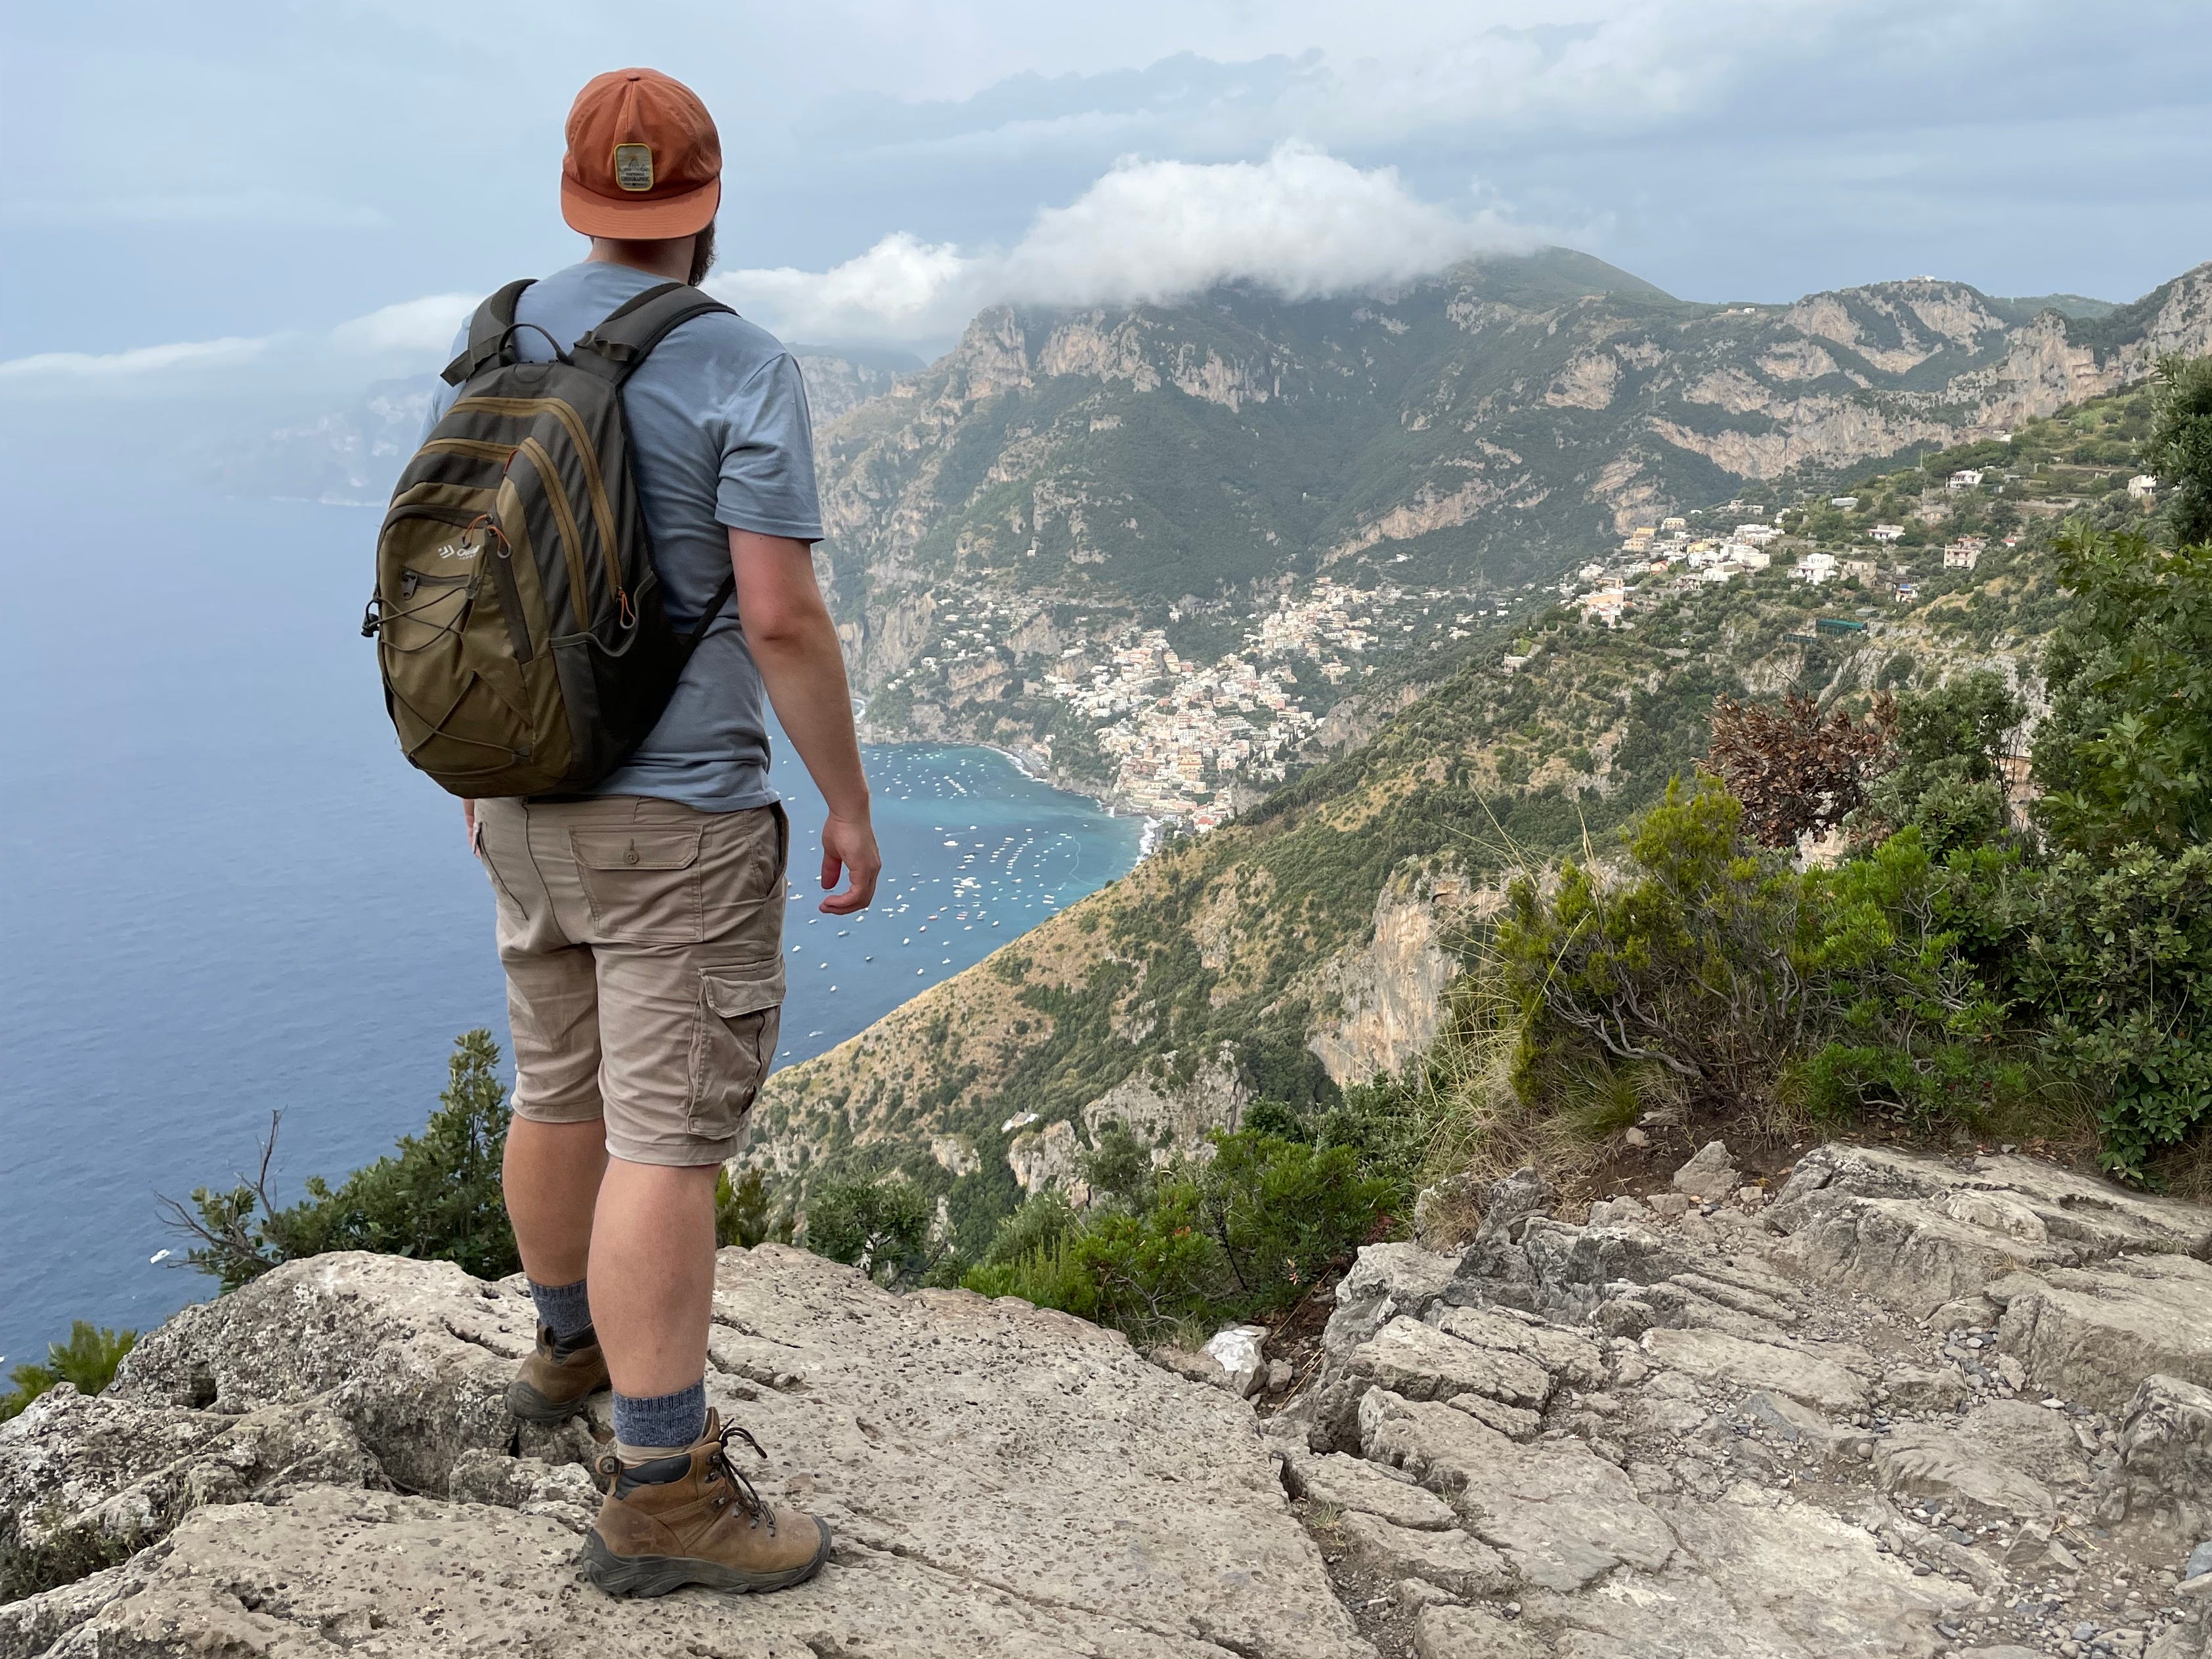 Timothy blickt auf die Aussicht auf einen Berg und trägt einen umgekehrten orangefarbenen Hut, ein blaues Hemd, Khakihosen, einen Rucksack und Wanderschuhe.